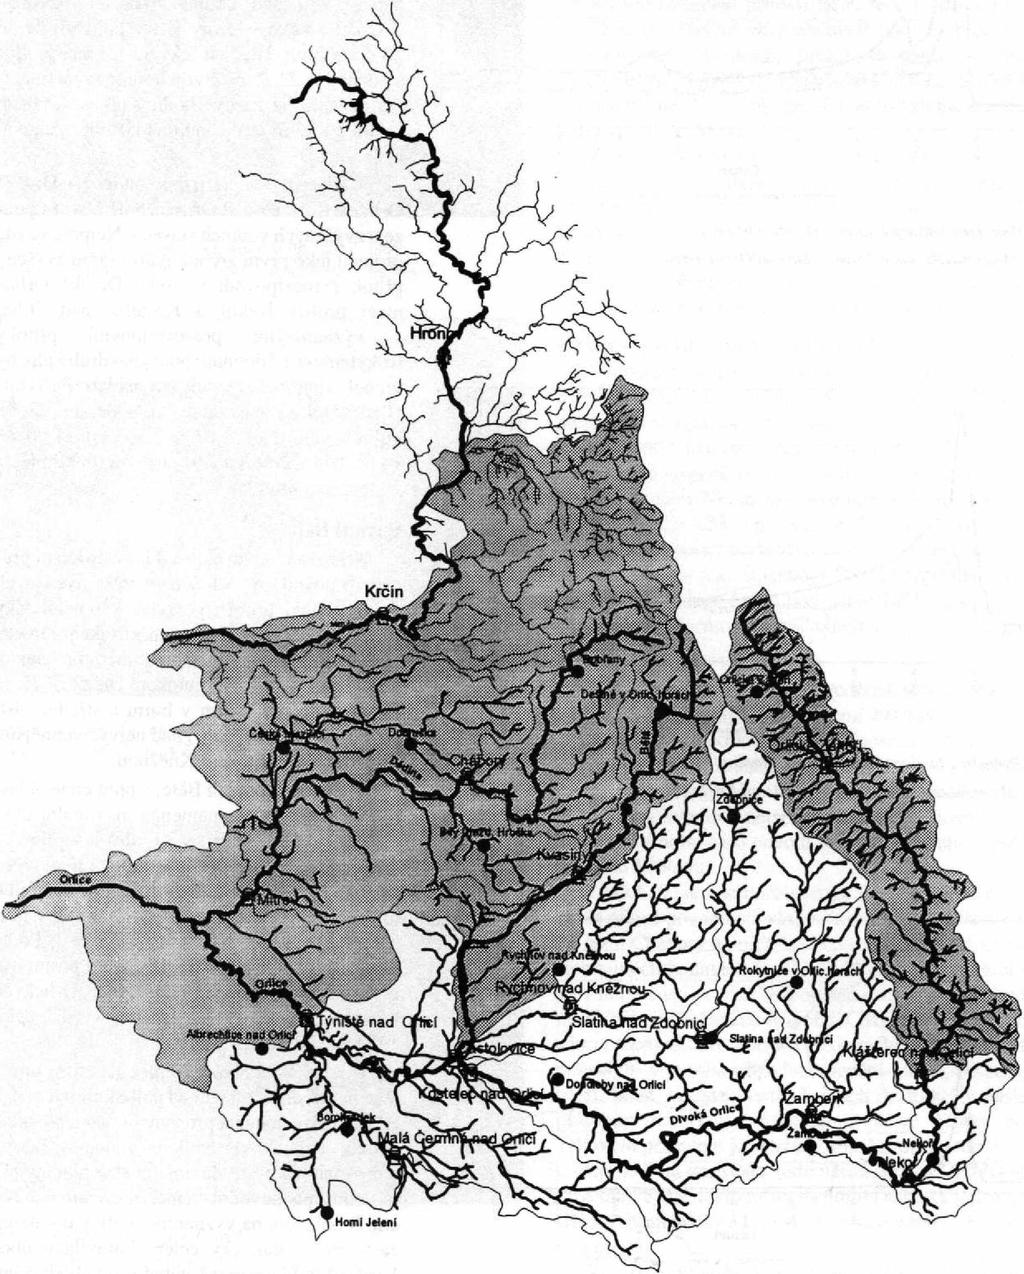 13 Říční síť a rozmístěni stanic ČHMtí v území dotčeném povodněmi. Fig. 13.